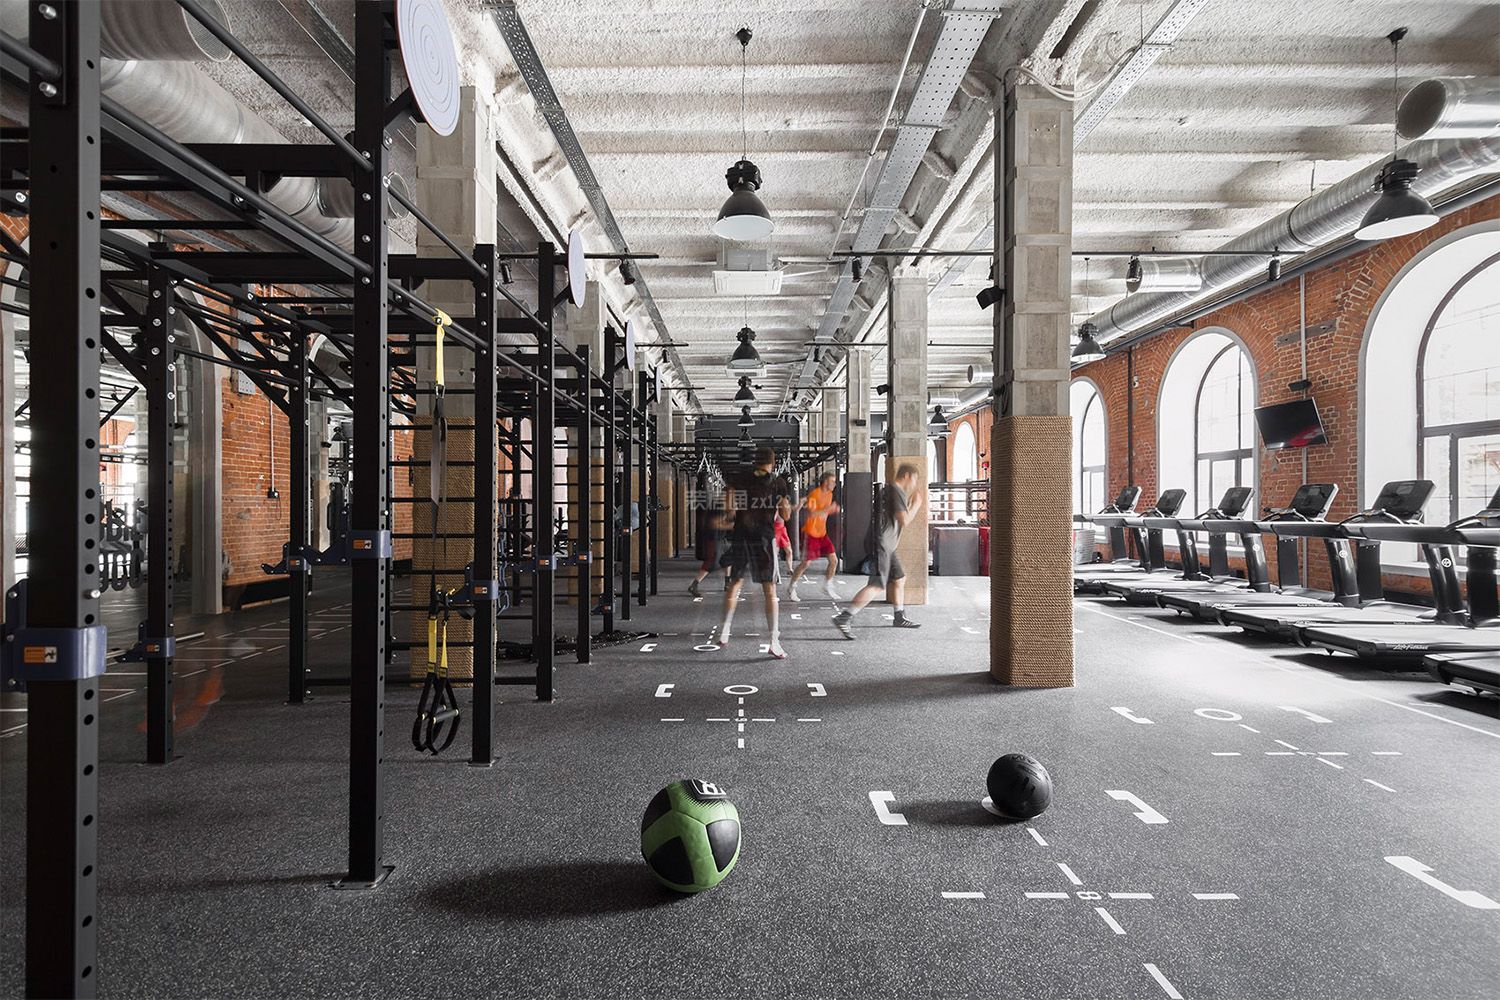 sektsia健身房工业风格350平米装修设计效果图案例